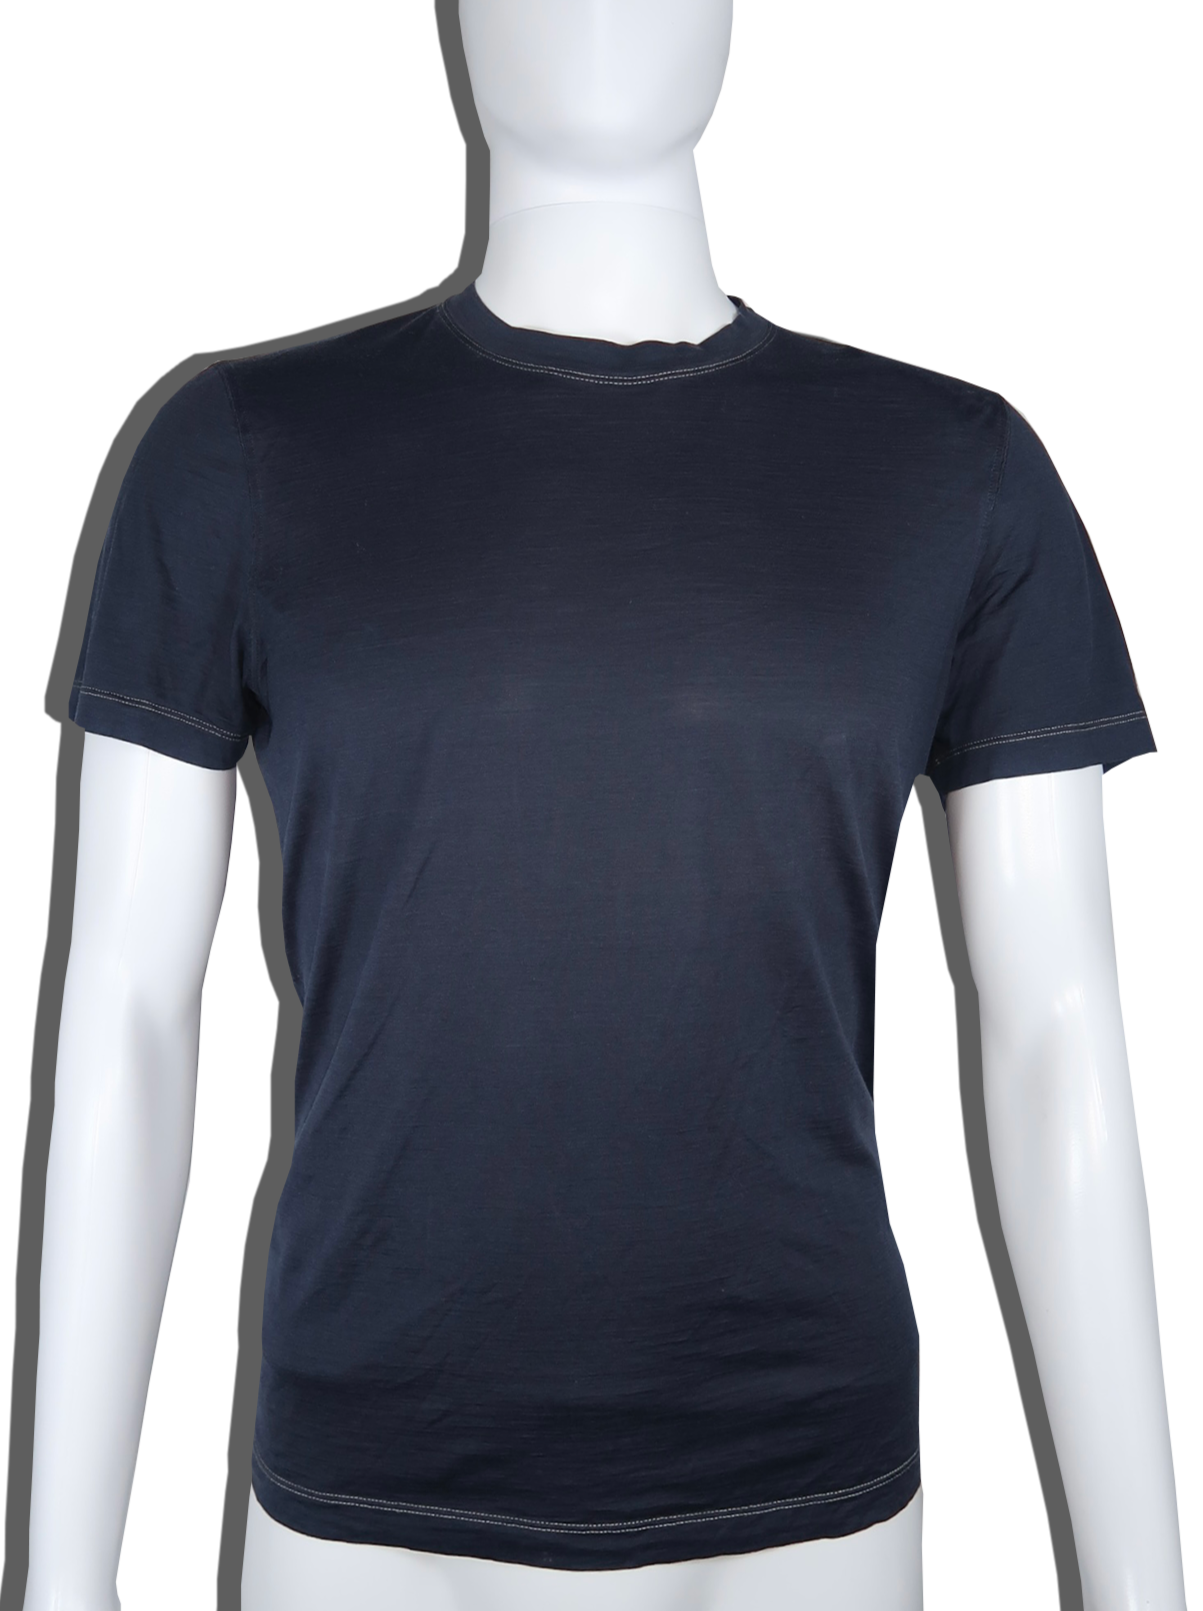 Brunello Cucinelli T-Shirt – Size Small